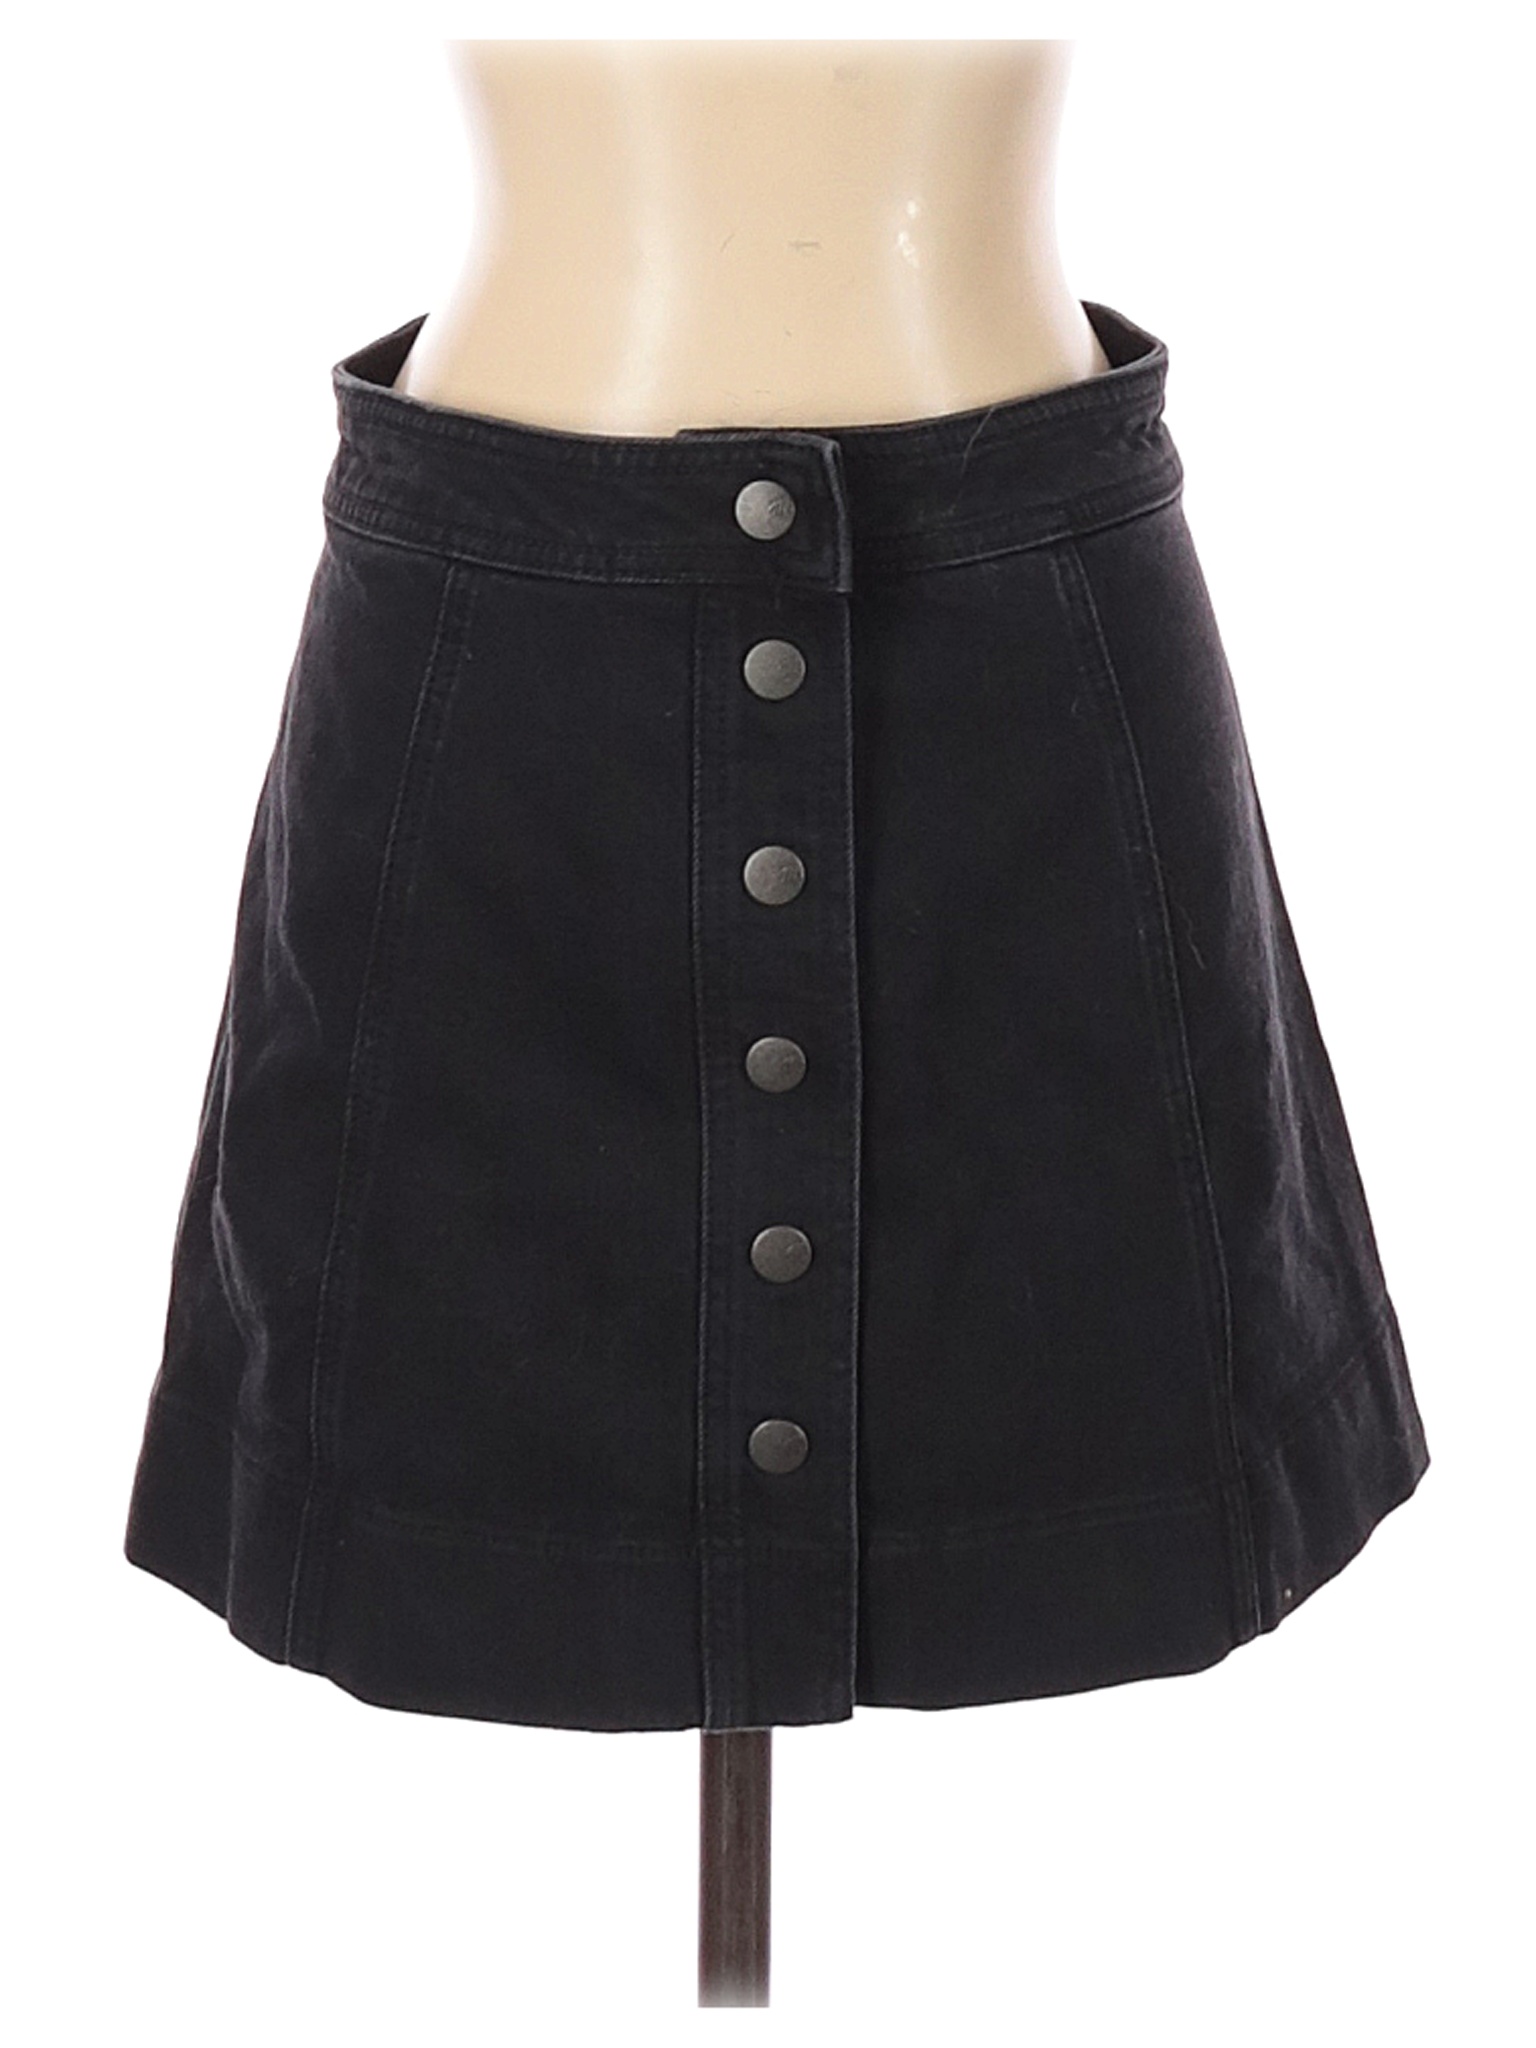 Madewell Women Black Denim Skirt 2 | eBay